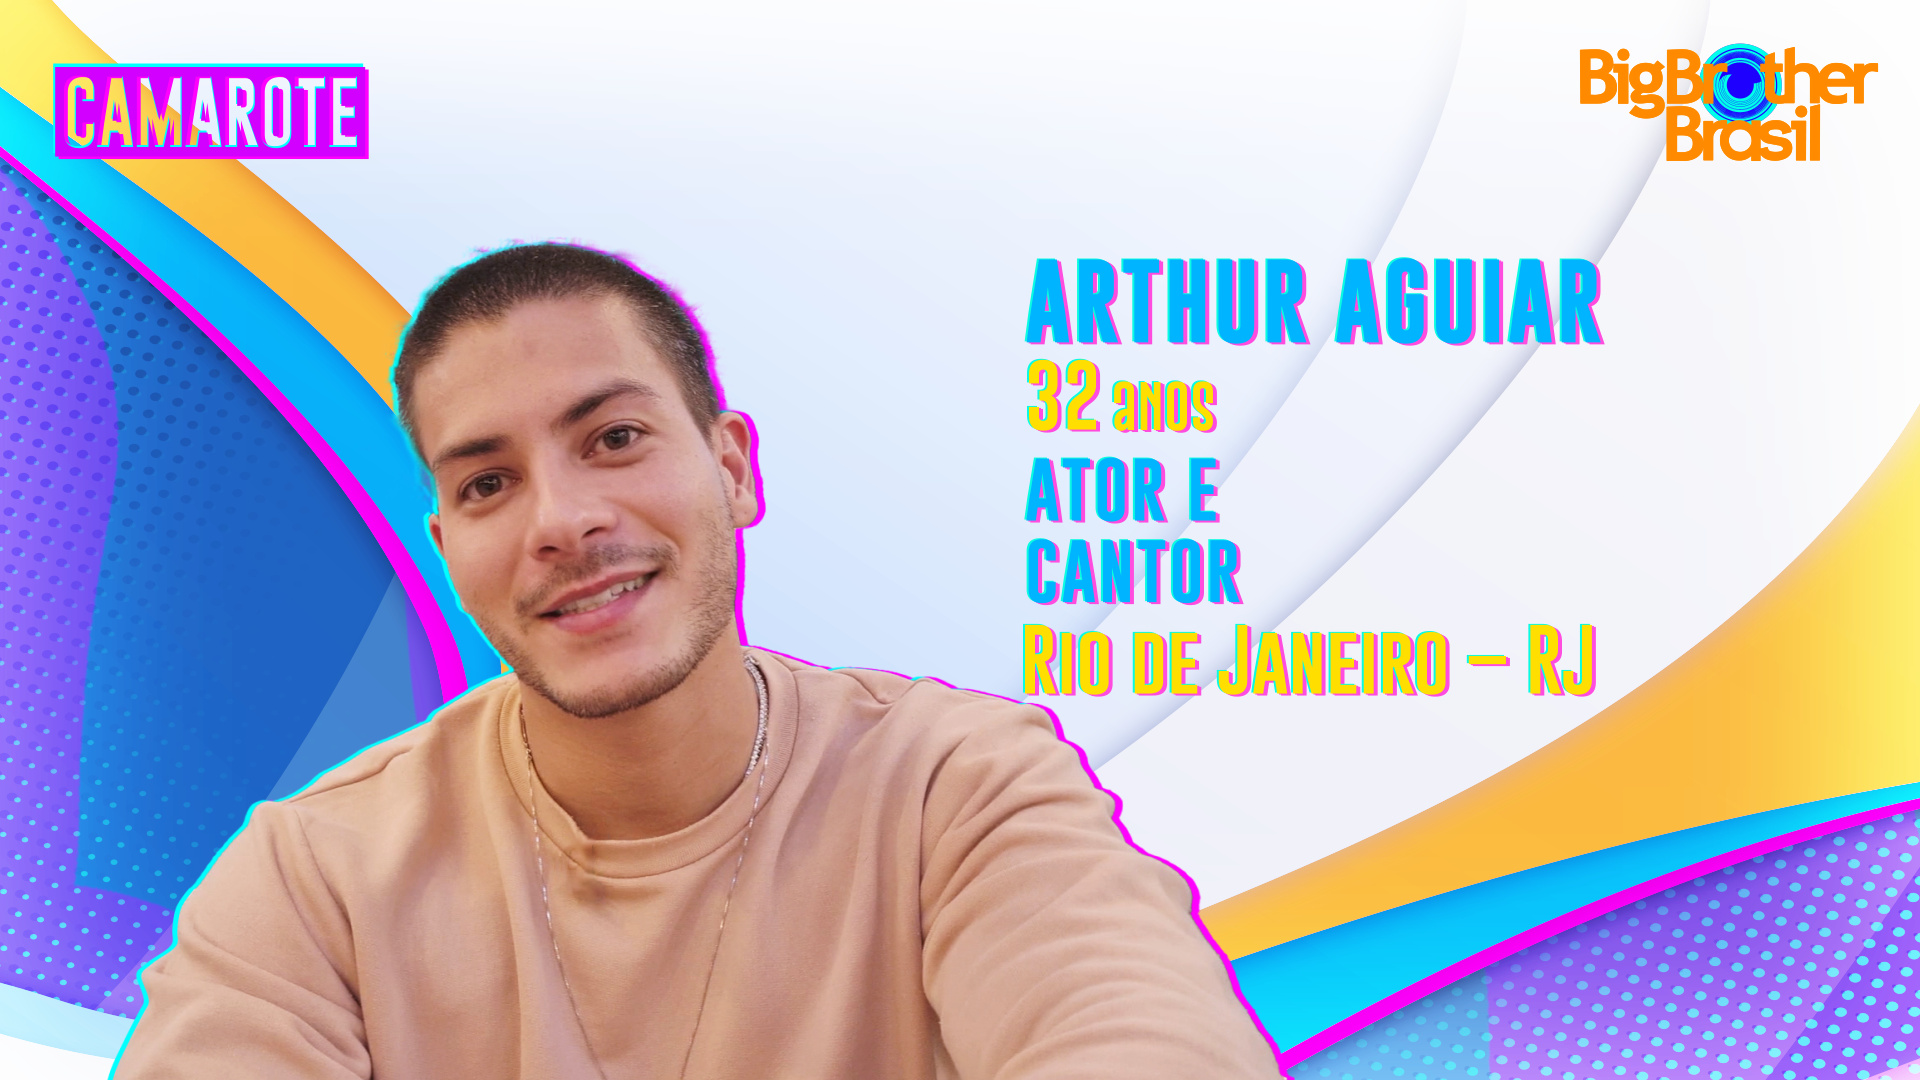 Arthur Aguiar integra o grupo Camarote no BBB22 (Foto: Divulgação Globo)